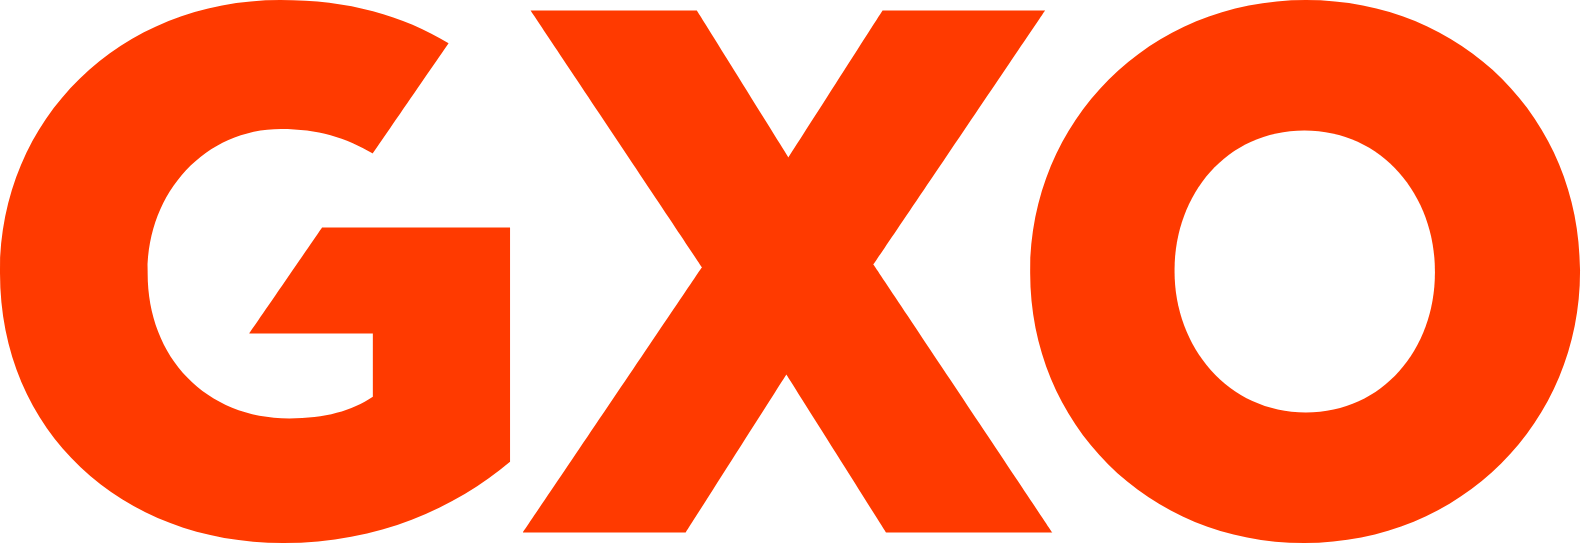 GXO Logistics logo (transparent PNG)